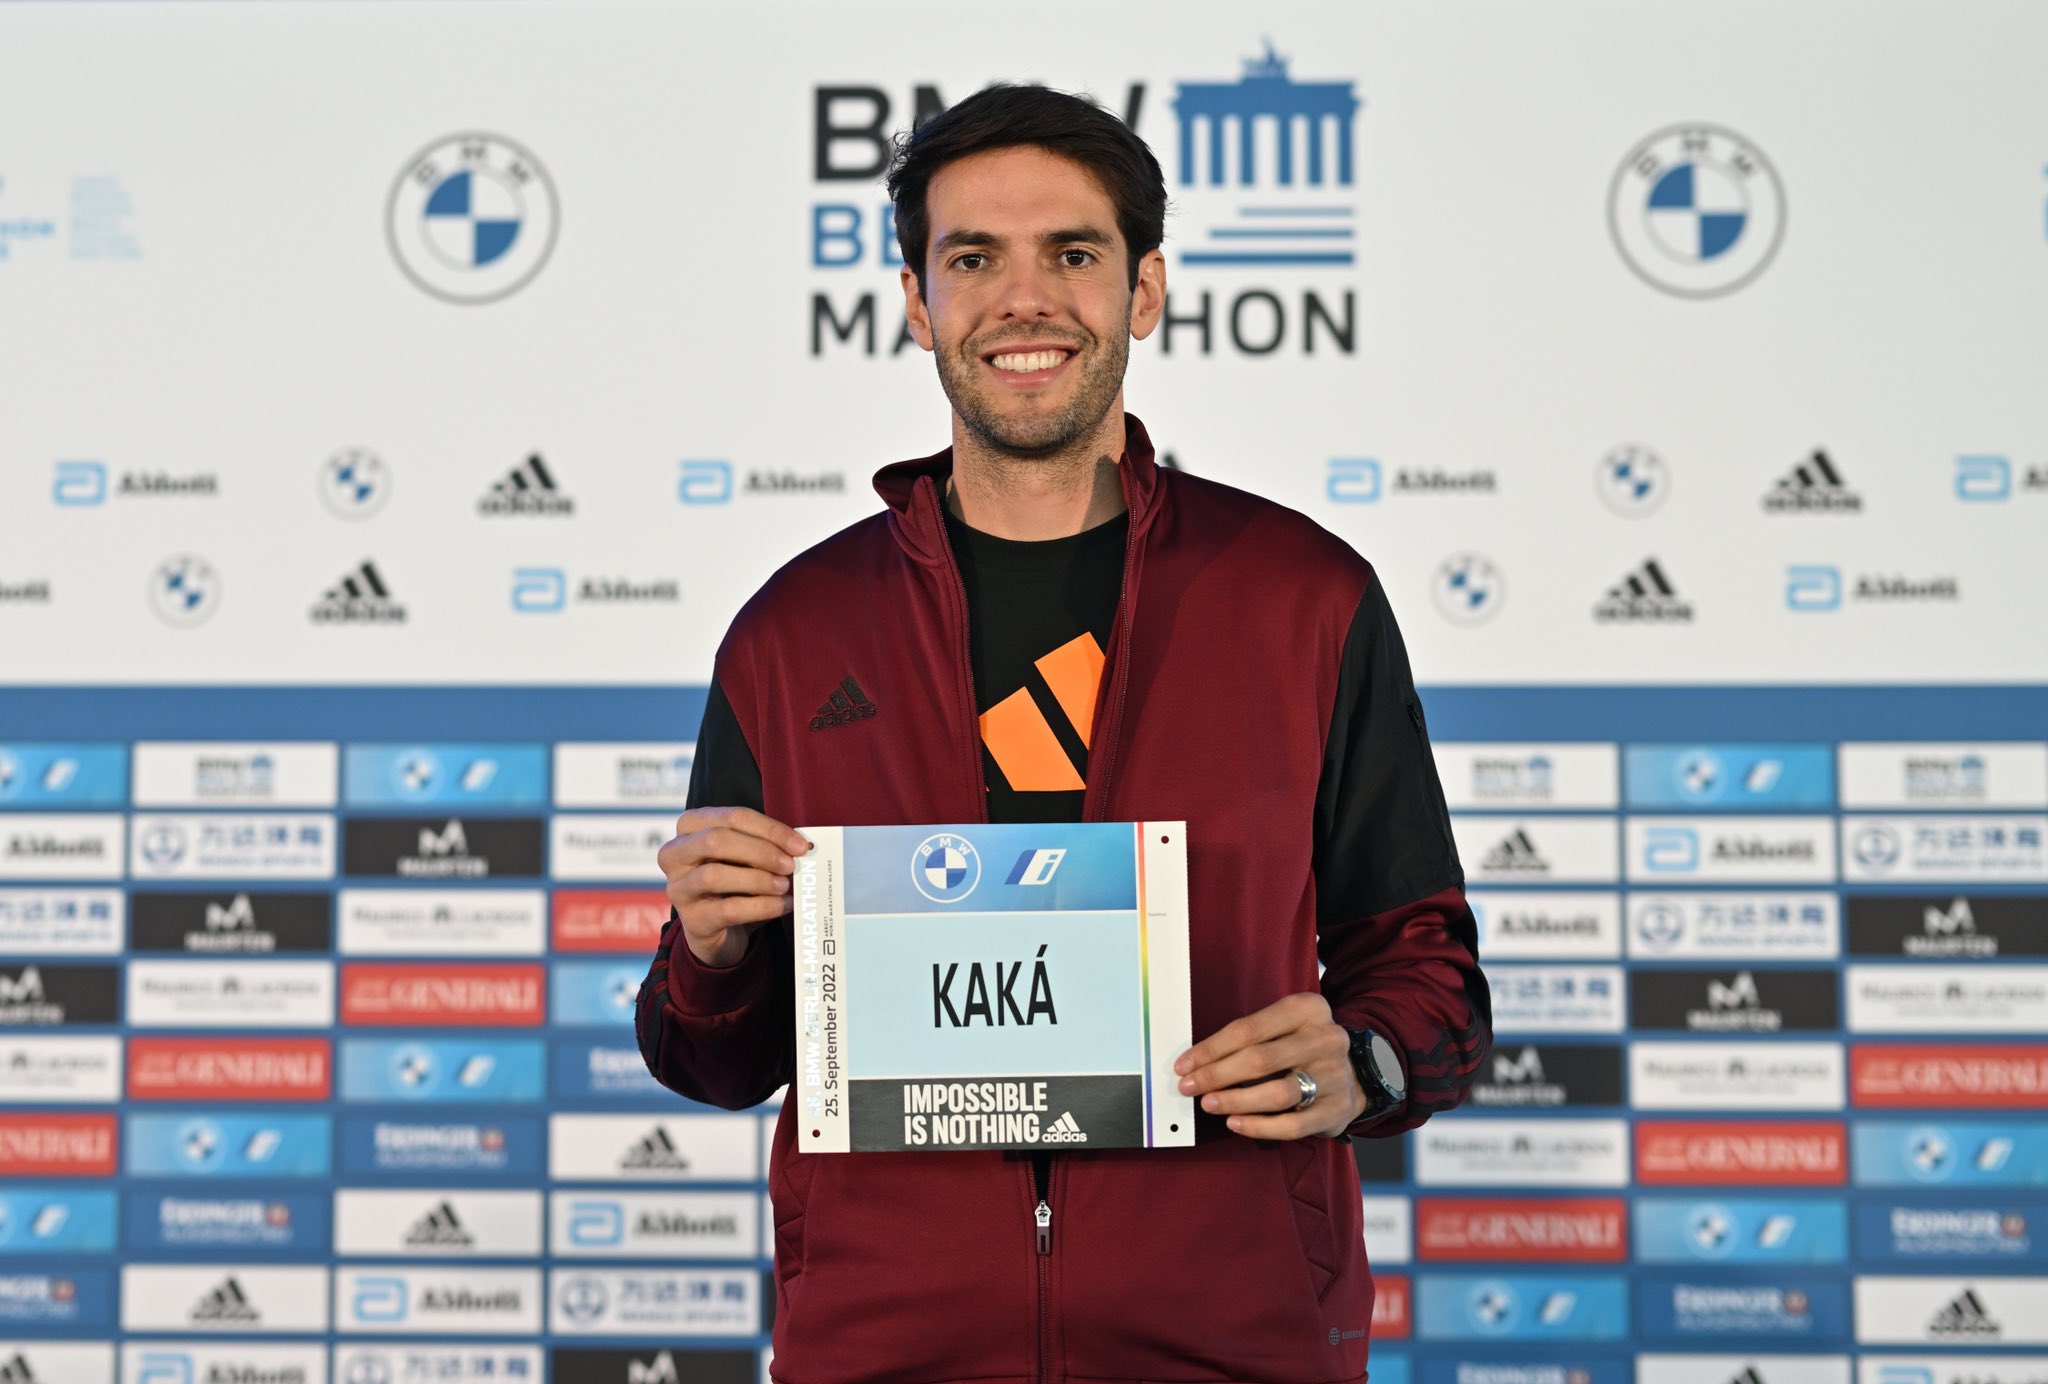 Del fútbol a la maratón: Kaká debutará como maratonista en la carrera de Berlín